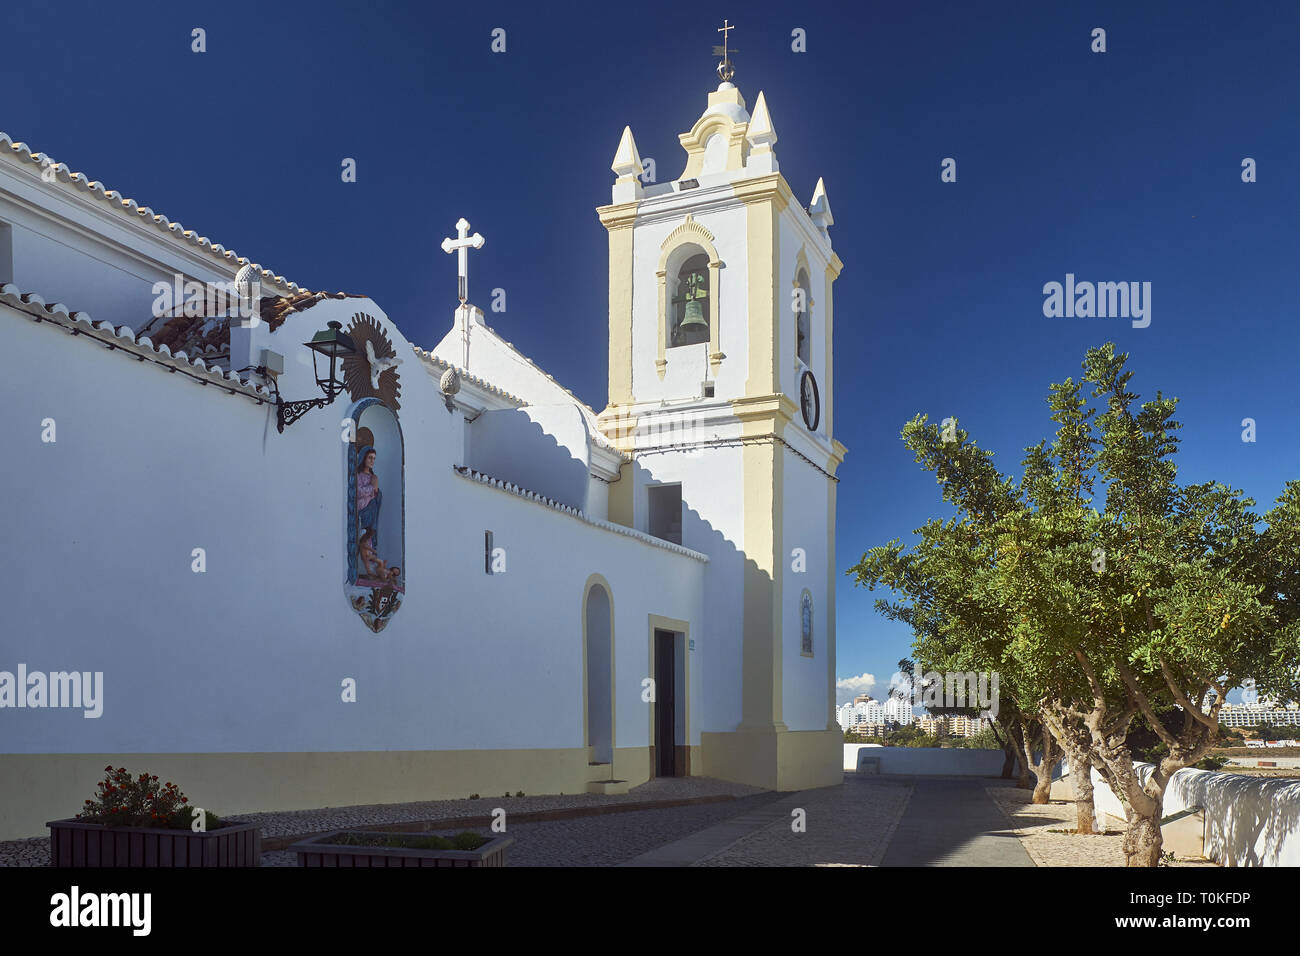 Igreja de Ferragudo church, Ferragudo, Faro, Algarve, Portugal Stock Photo